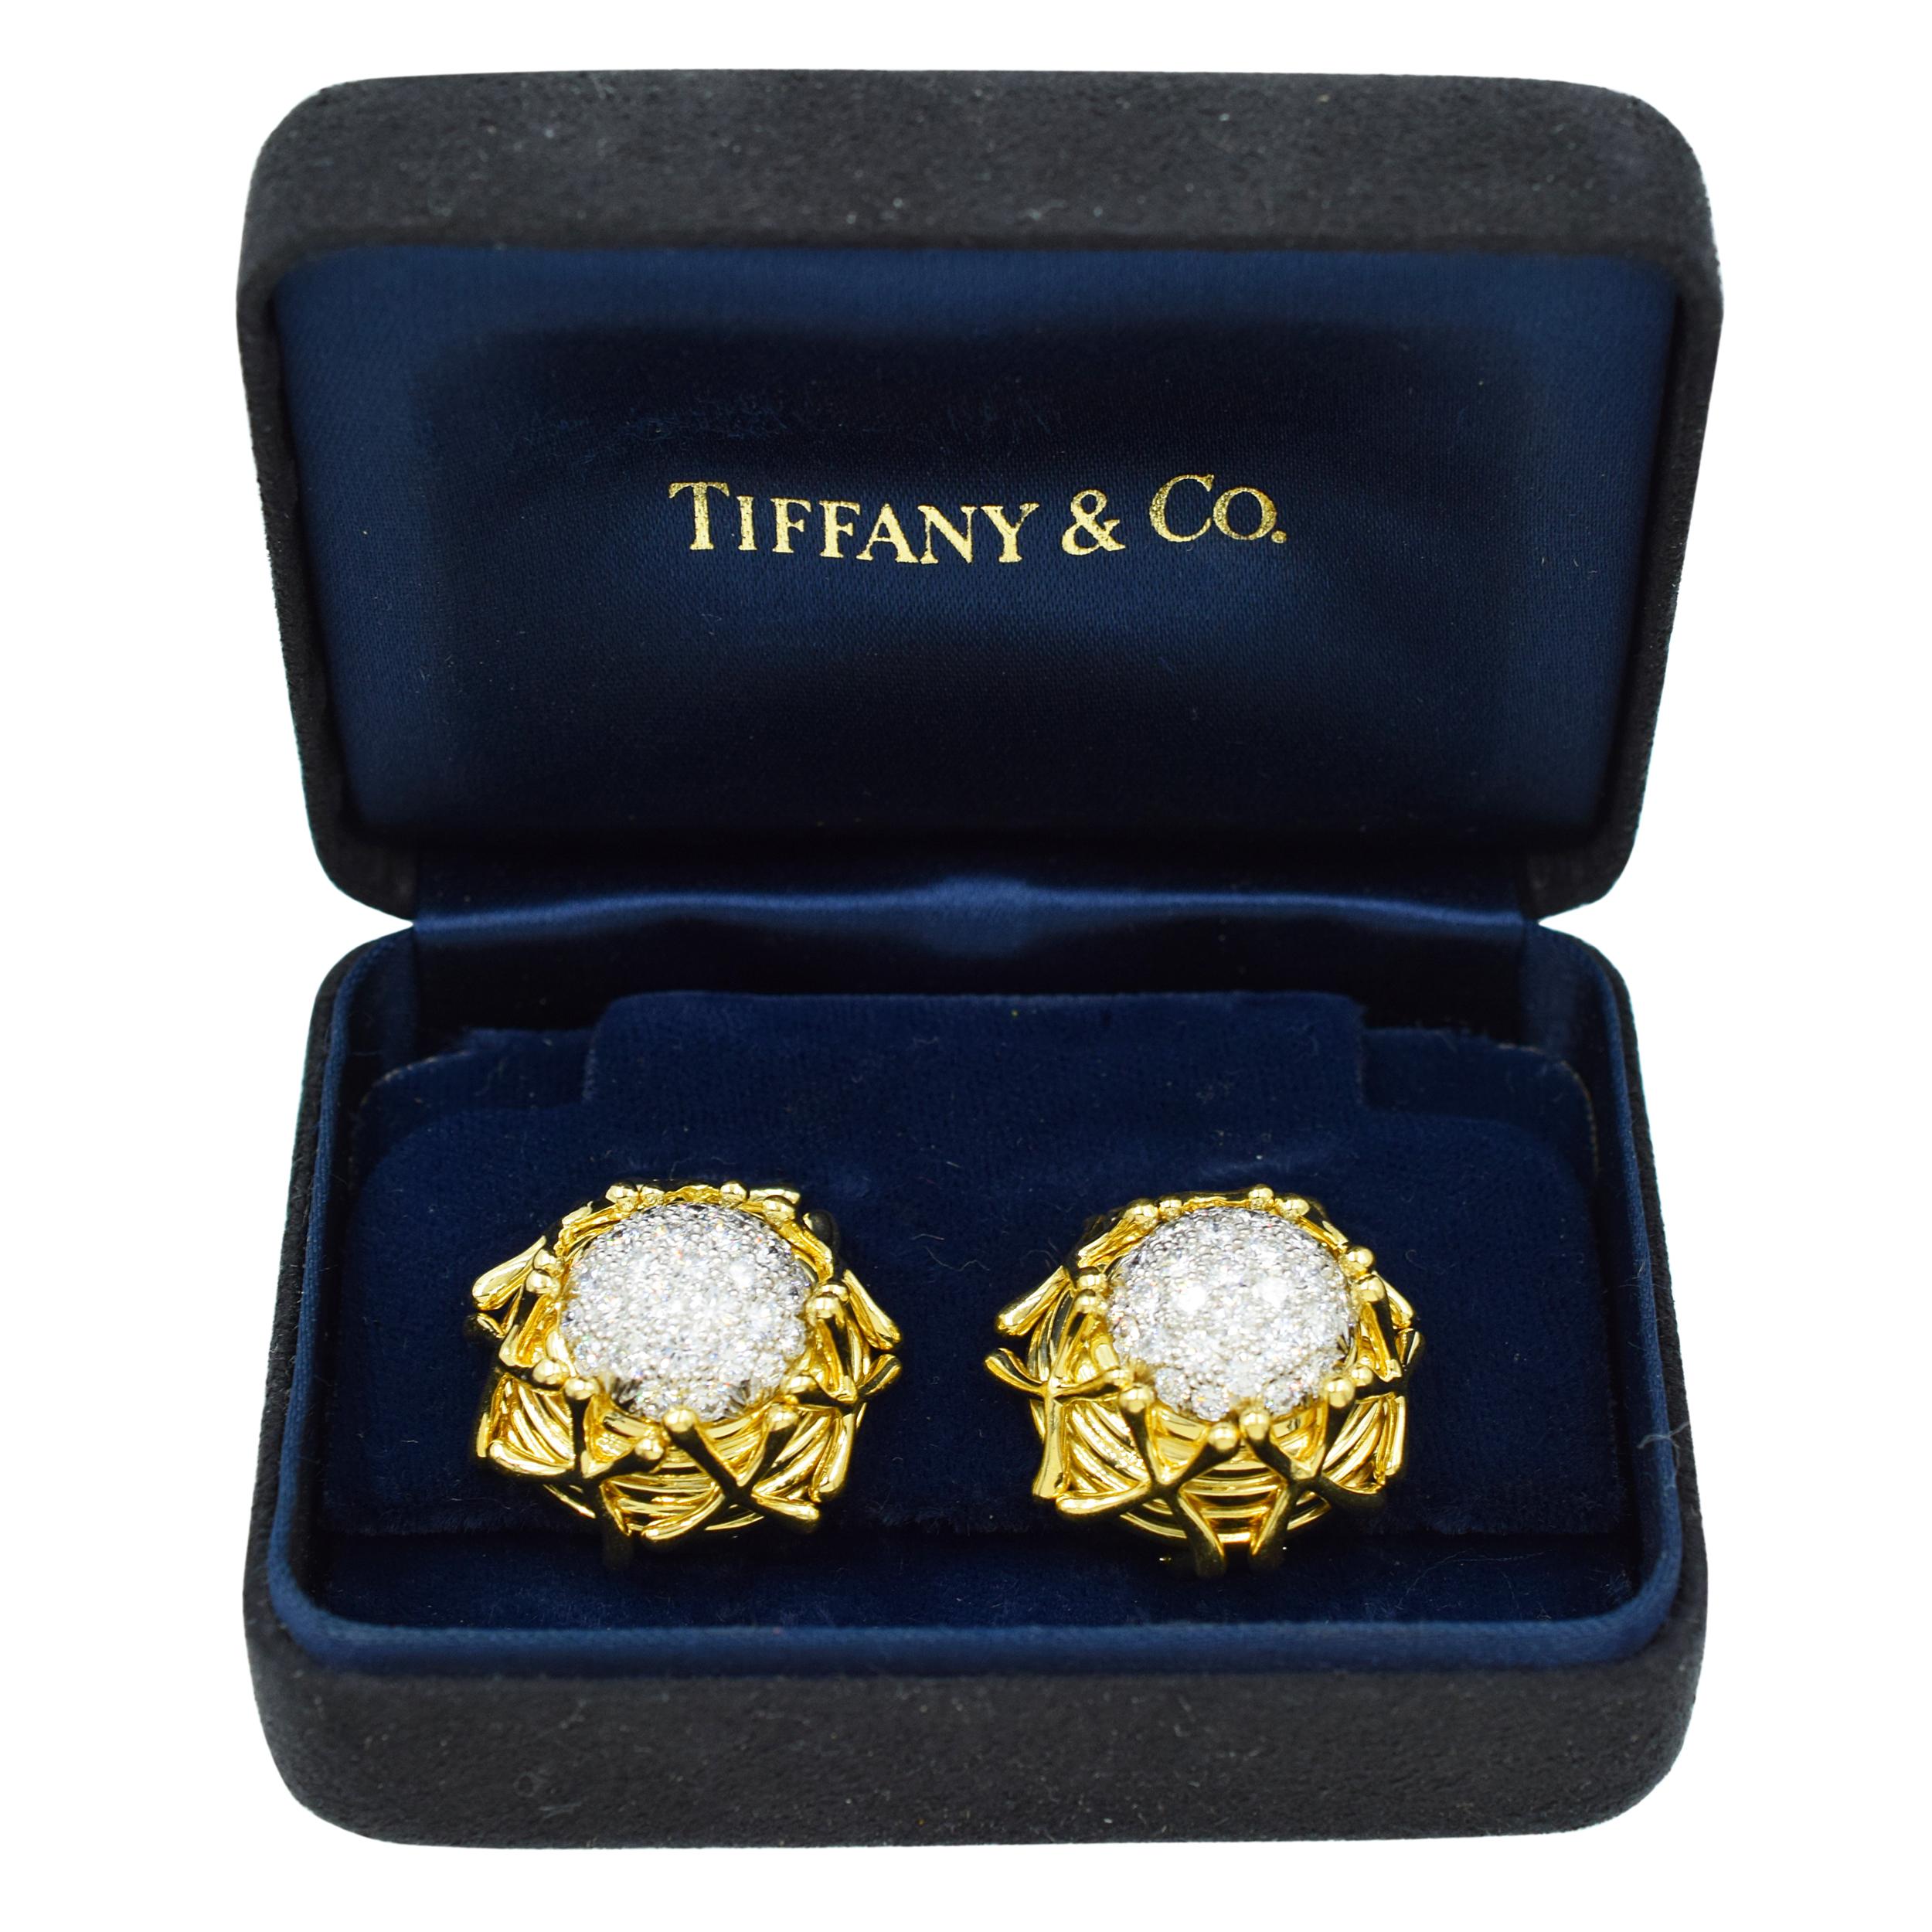 Artist Tiffany & Co. Jean Shlumberger Diamond Clip on Earrings in 18k Yellow Gold